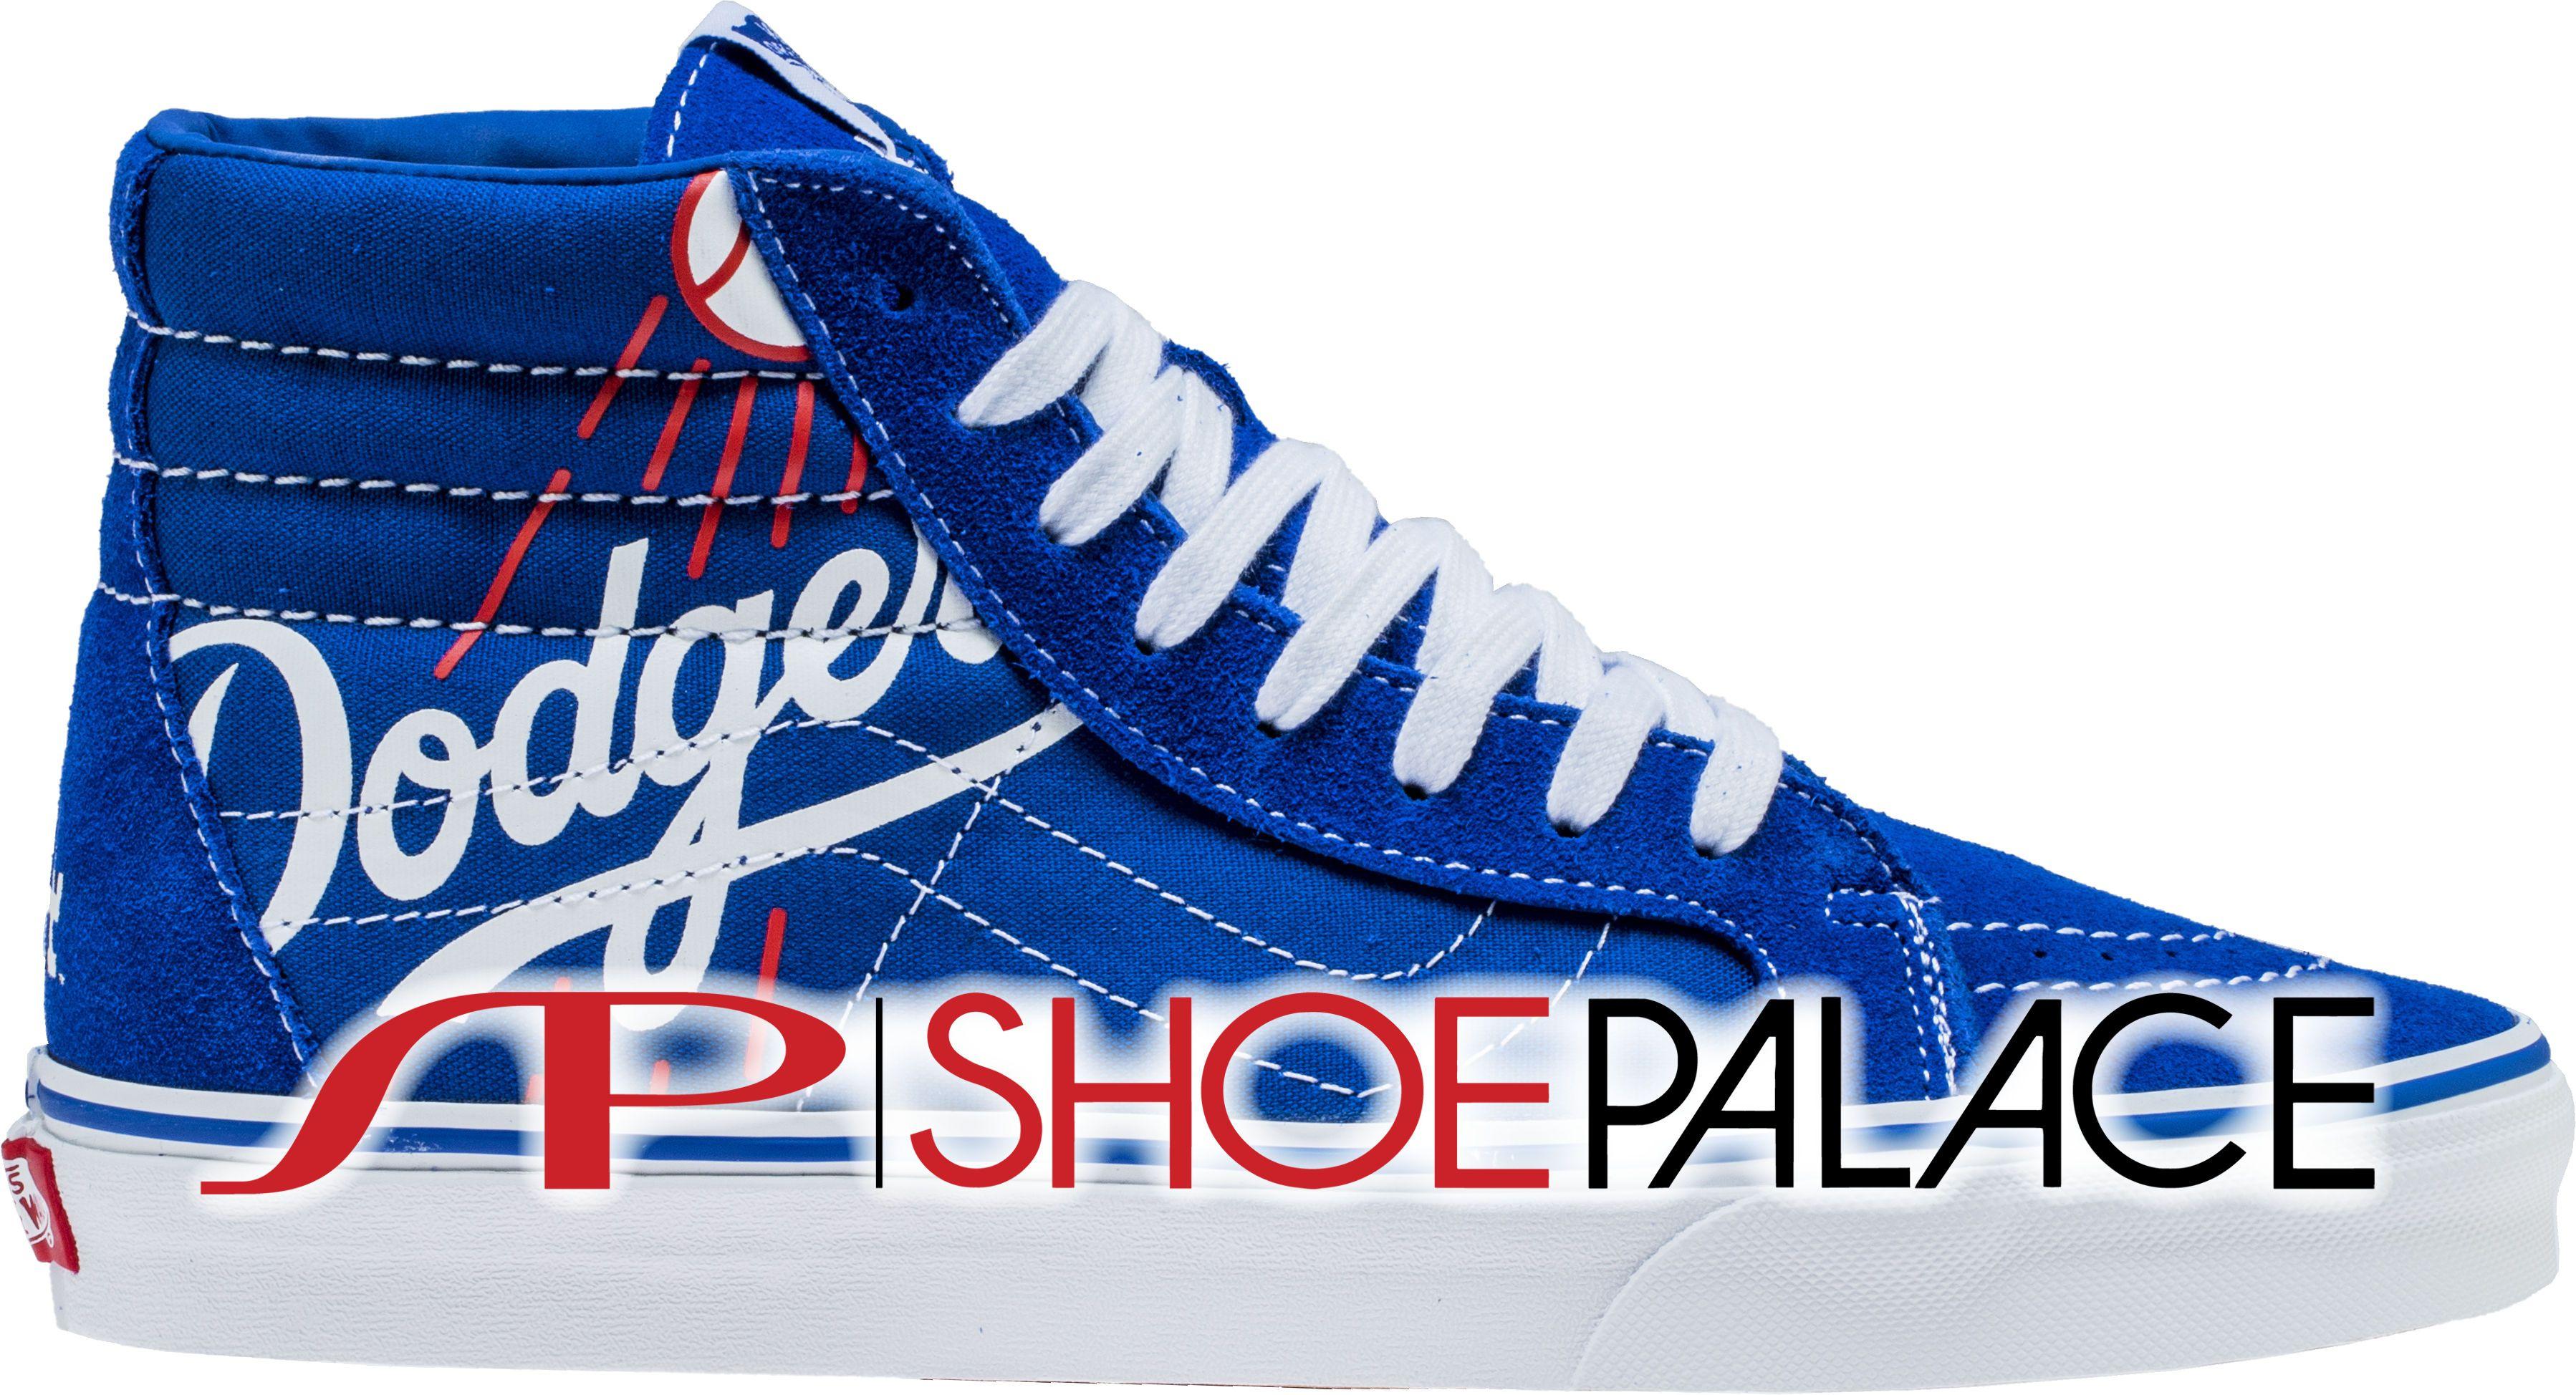 White and Blue Shoe Brand Logo - Vans XSBRT1 Dodgers MLB SK8 HI Reissue Mens Skateboarding Shoe ...